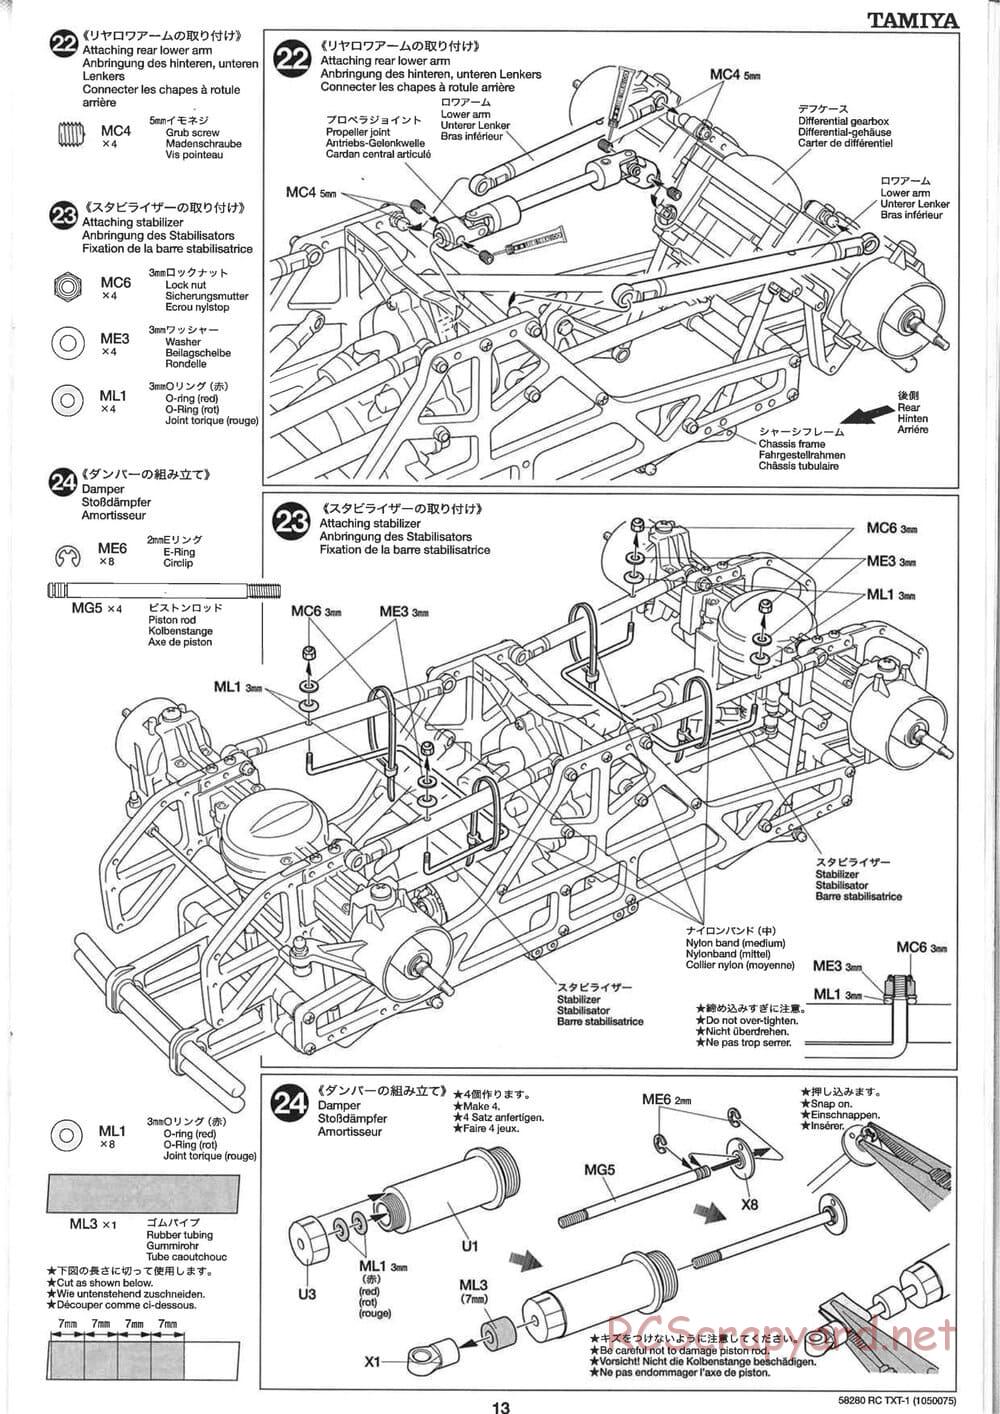 Tamiya - TXT-1 (Tamiya Xtreme Truck) Chassis - Manual - Page 13